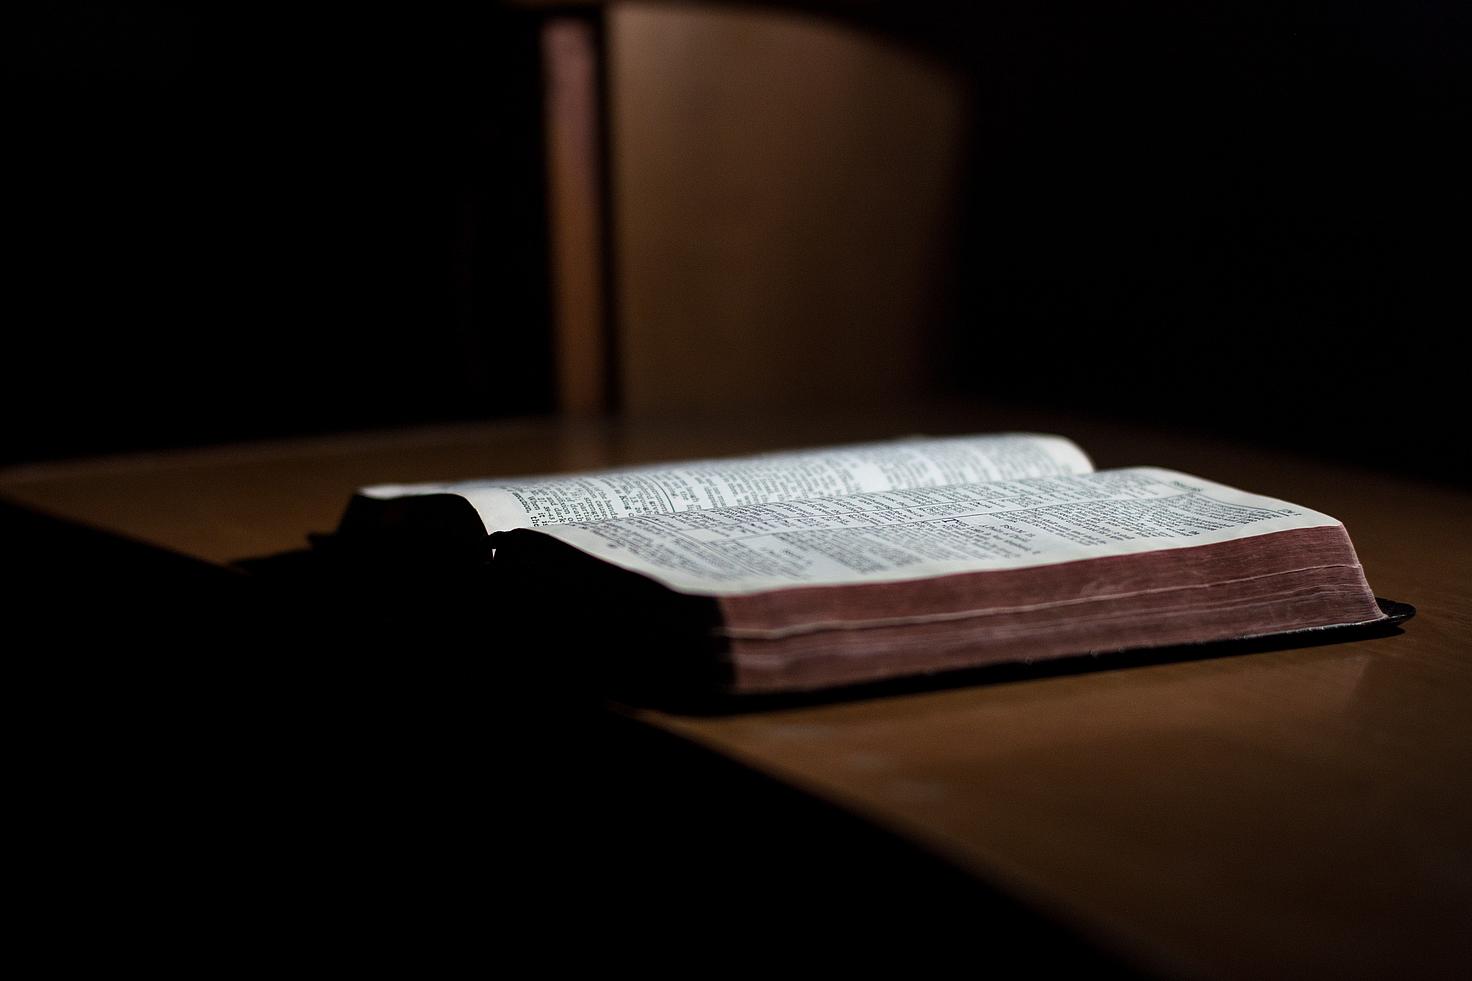 Llibre obert sobre una taula ©John-Mark Smith/Pexels